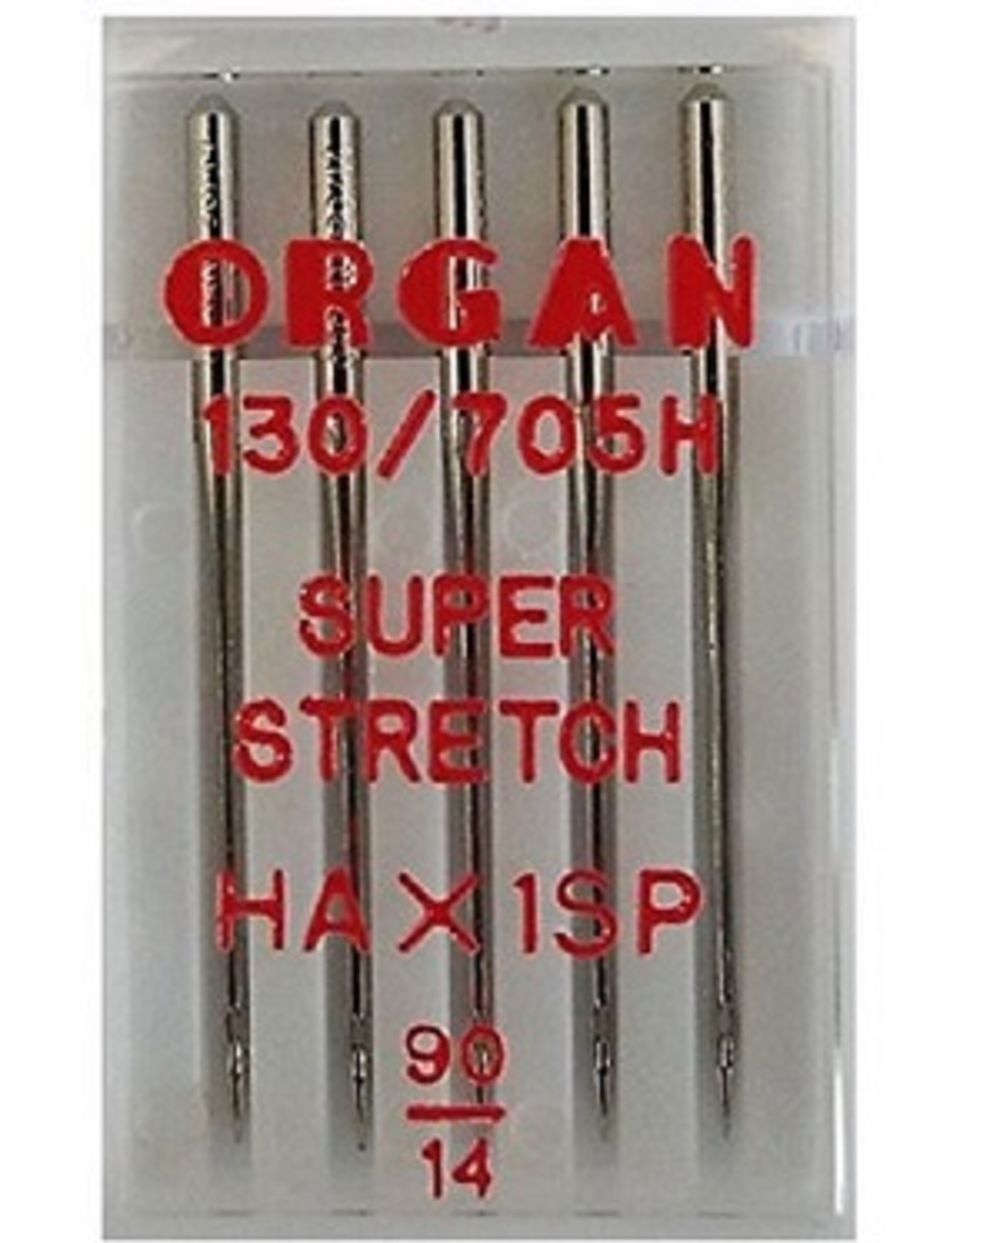 Organ Maschinennadeln 90 HA x 1 SP Super Stretch á 5 Stück